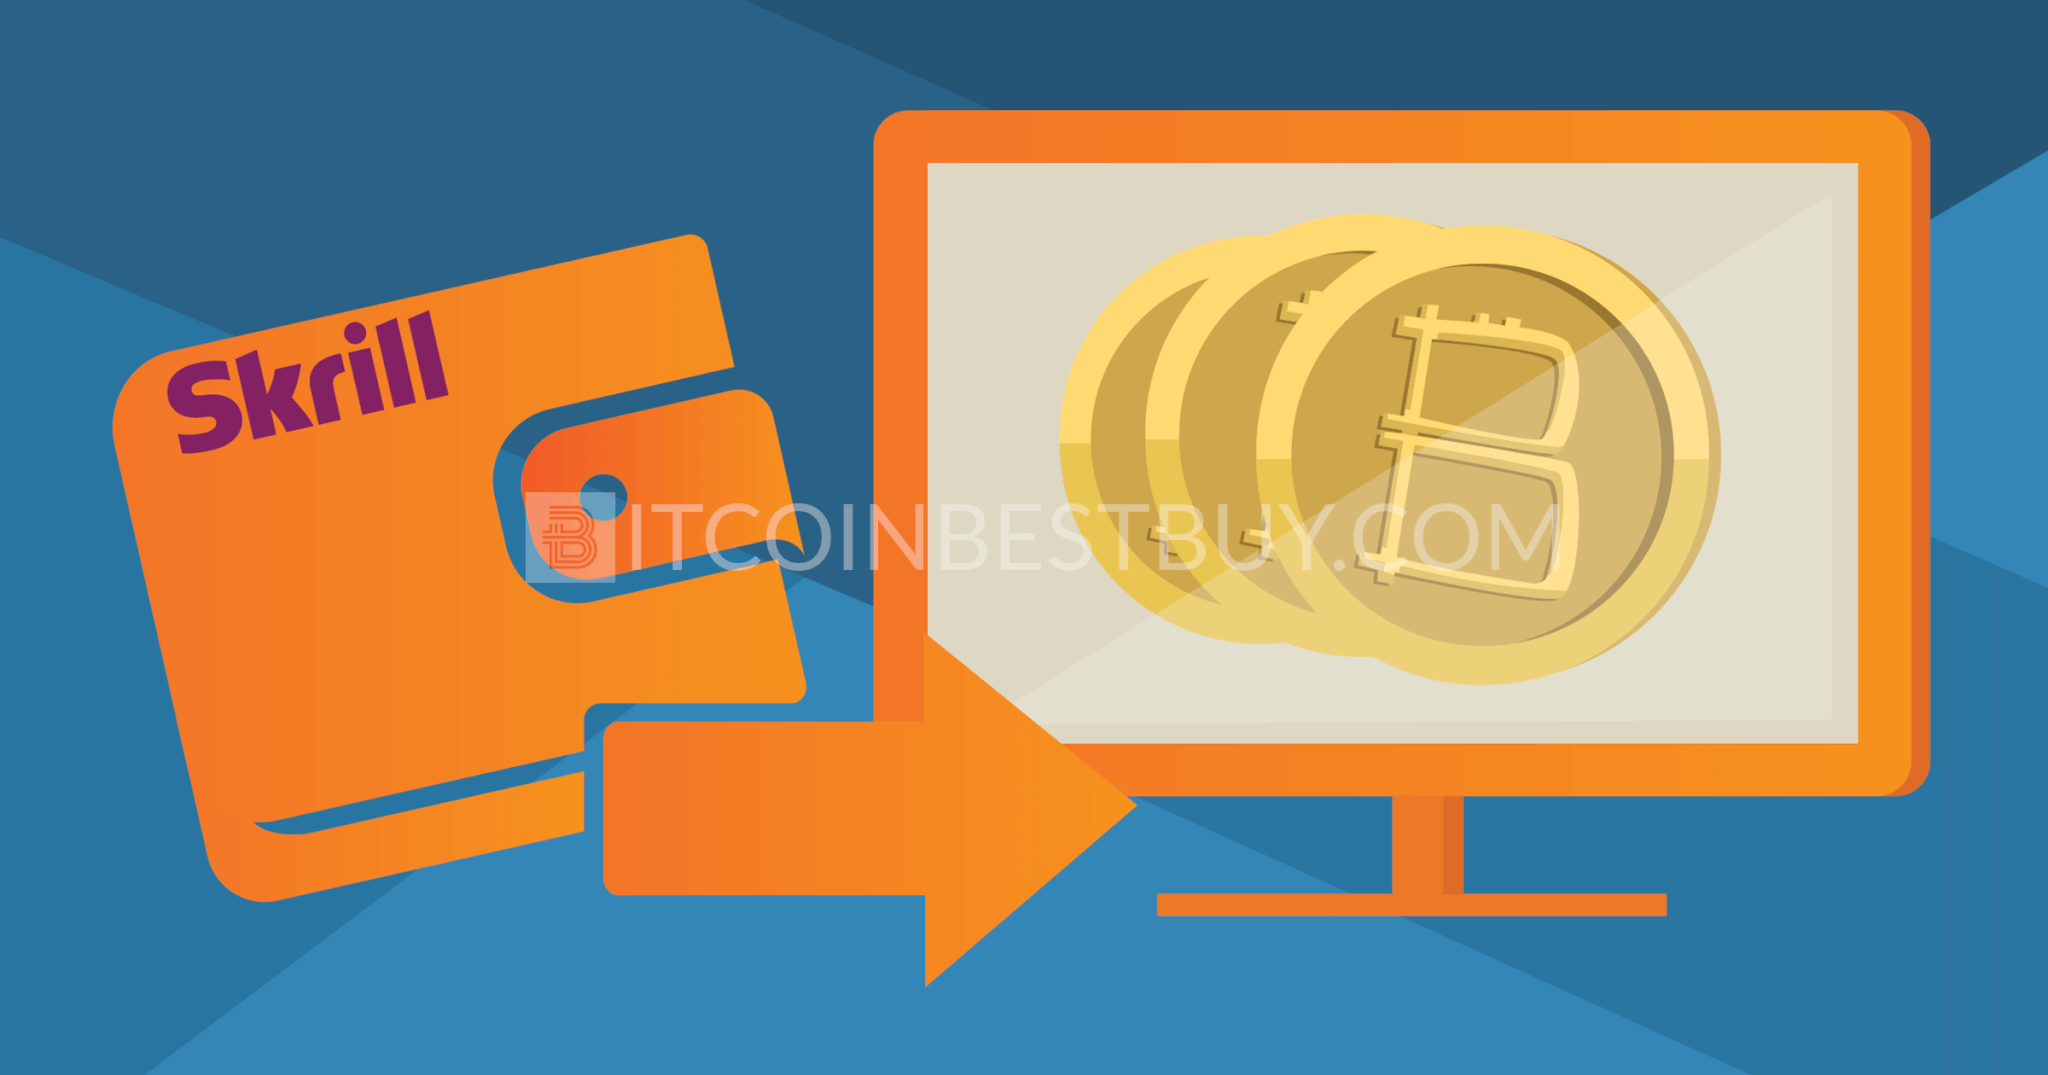 How to buy bitcoin via skrill